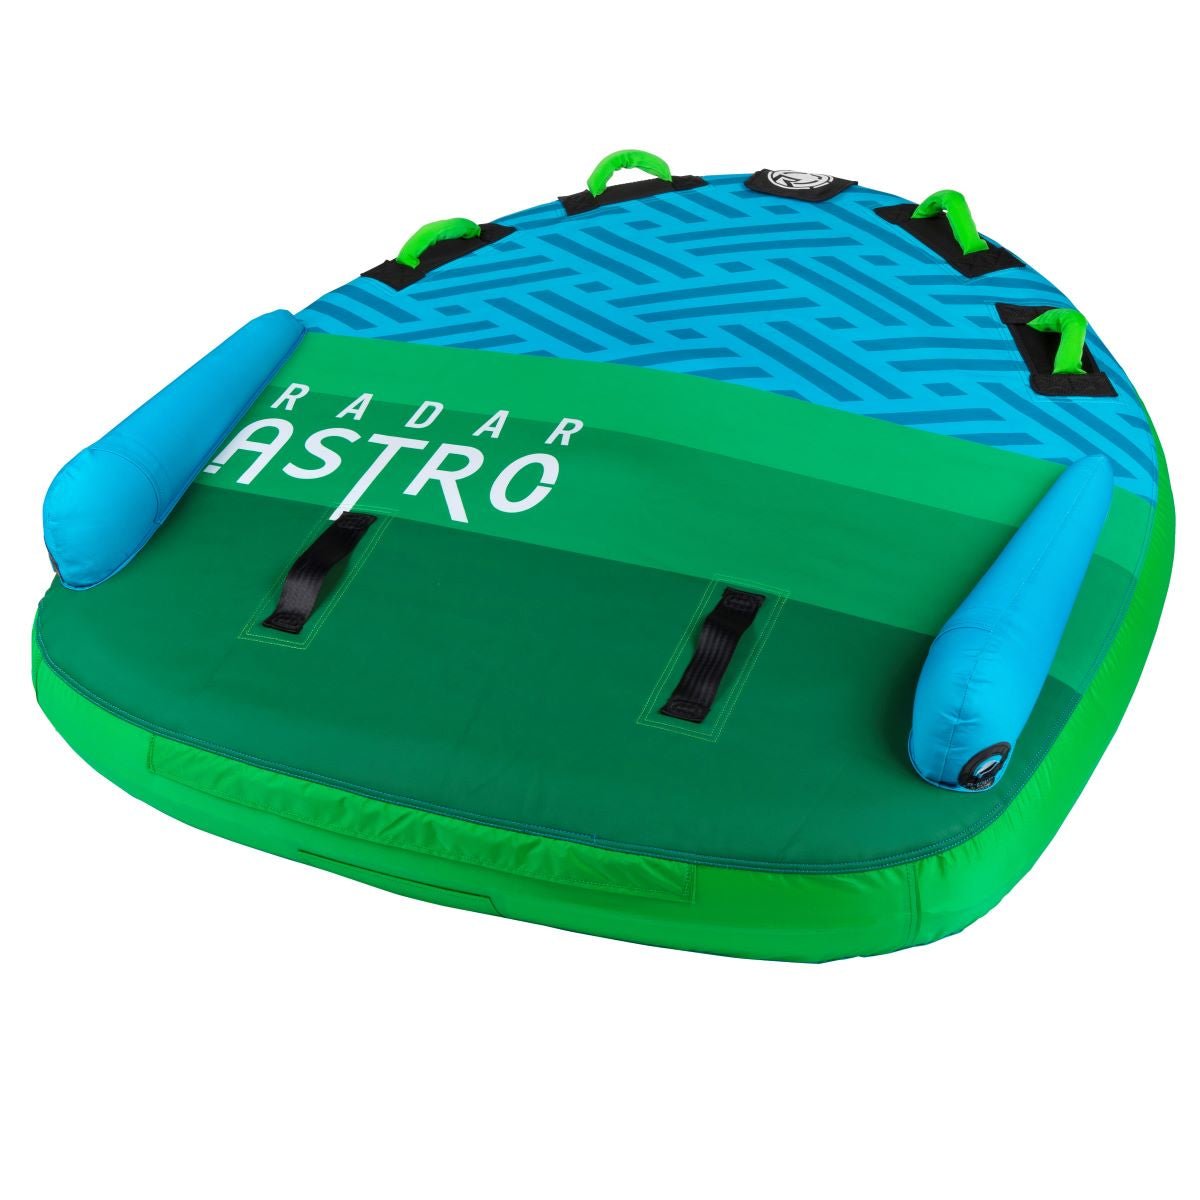 Radar Astro Marshmallow Top 2 Person Tube - BoardCo